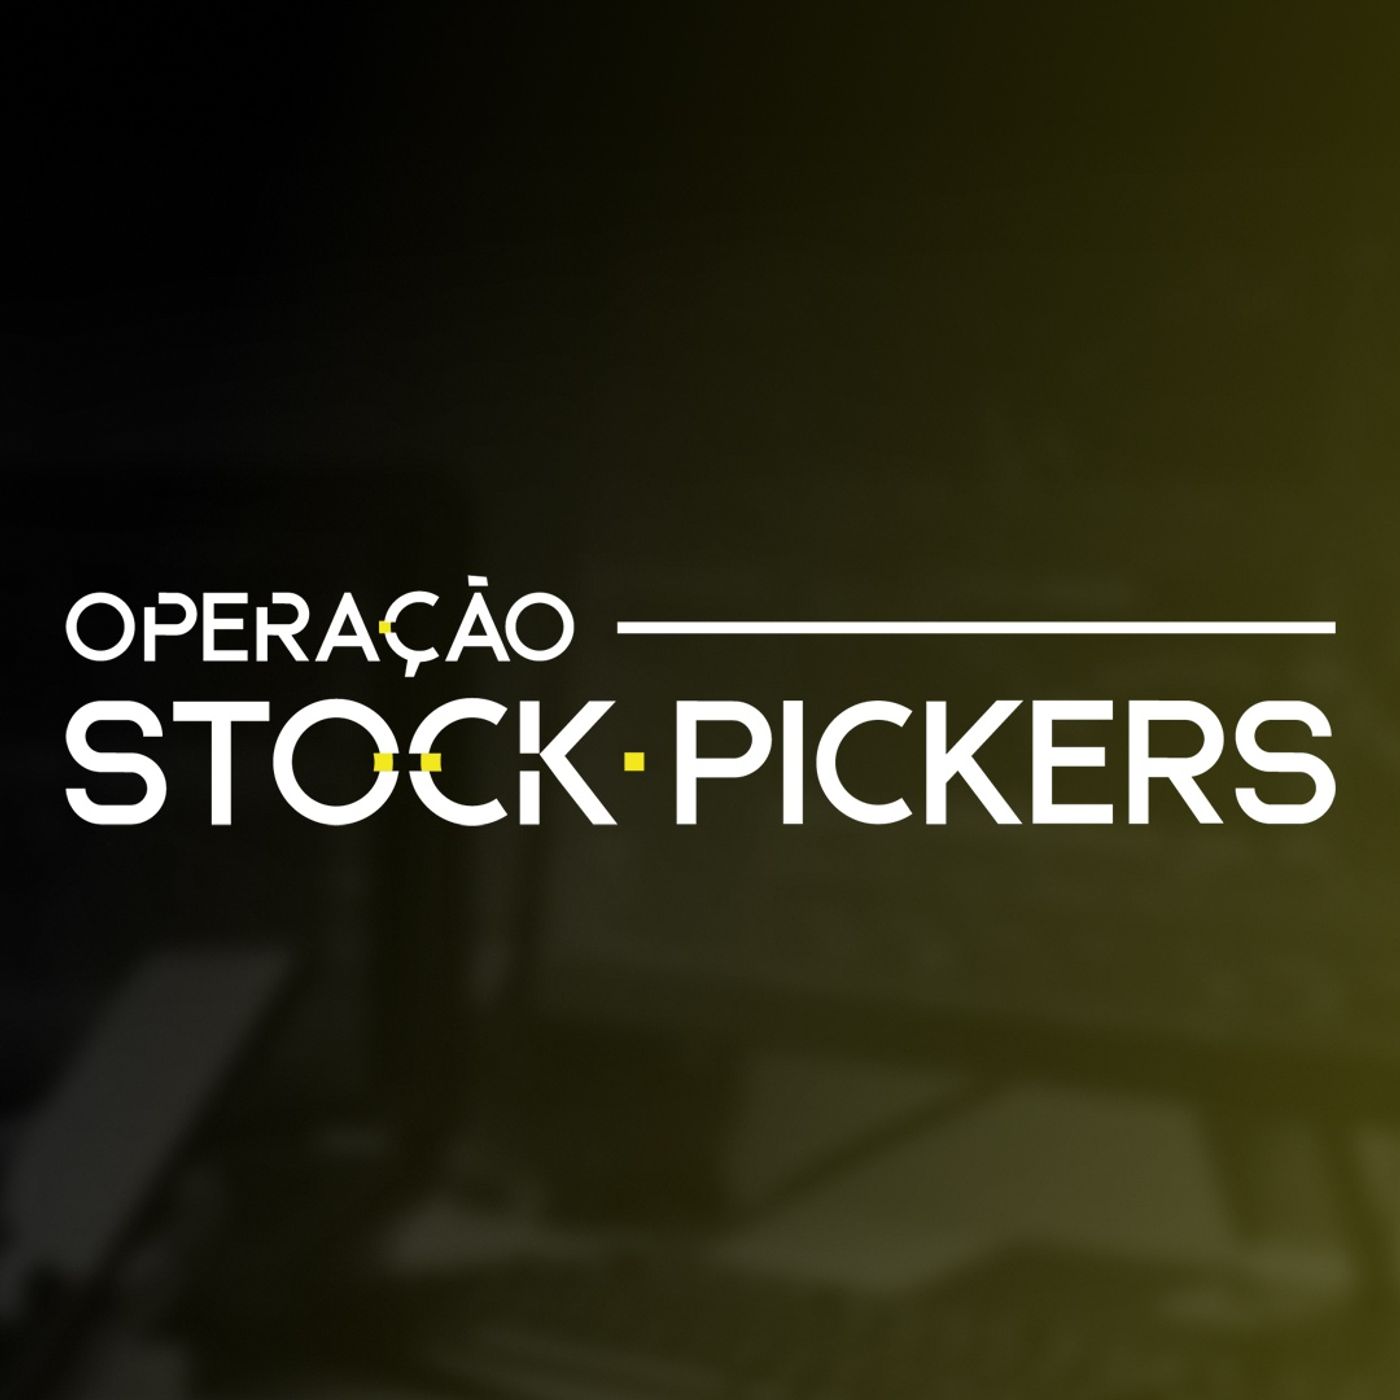 Operacao Stock Pickers: Como criar um clube de investimentos e transformá-lo em gestora